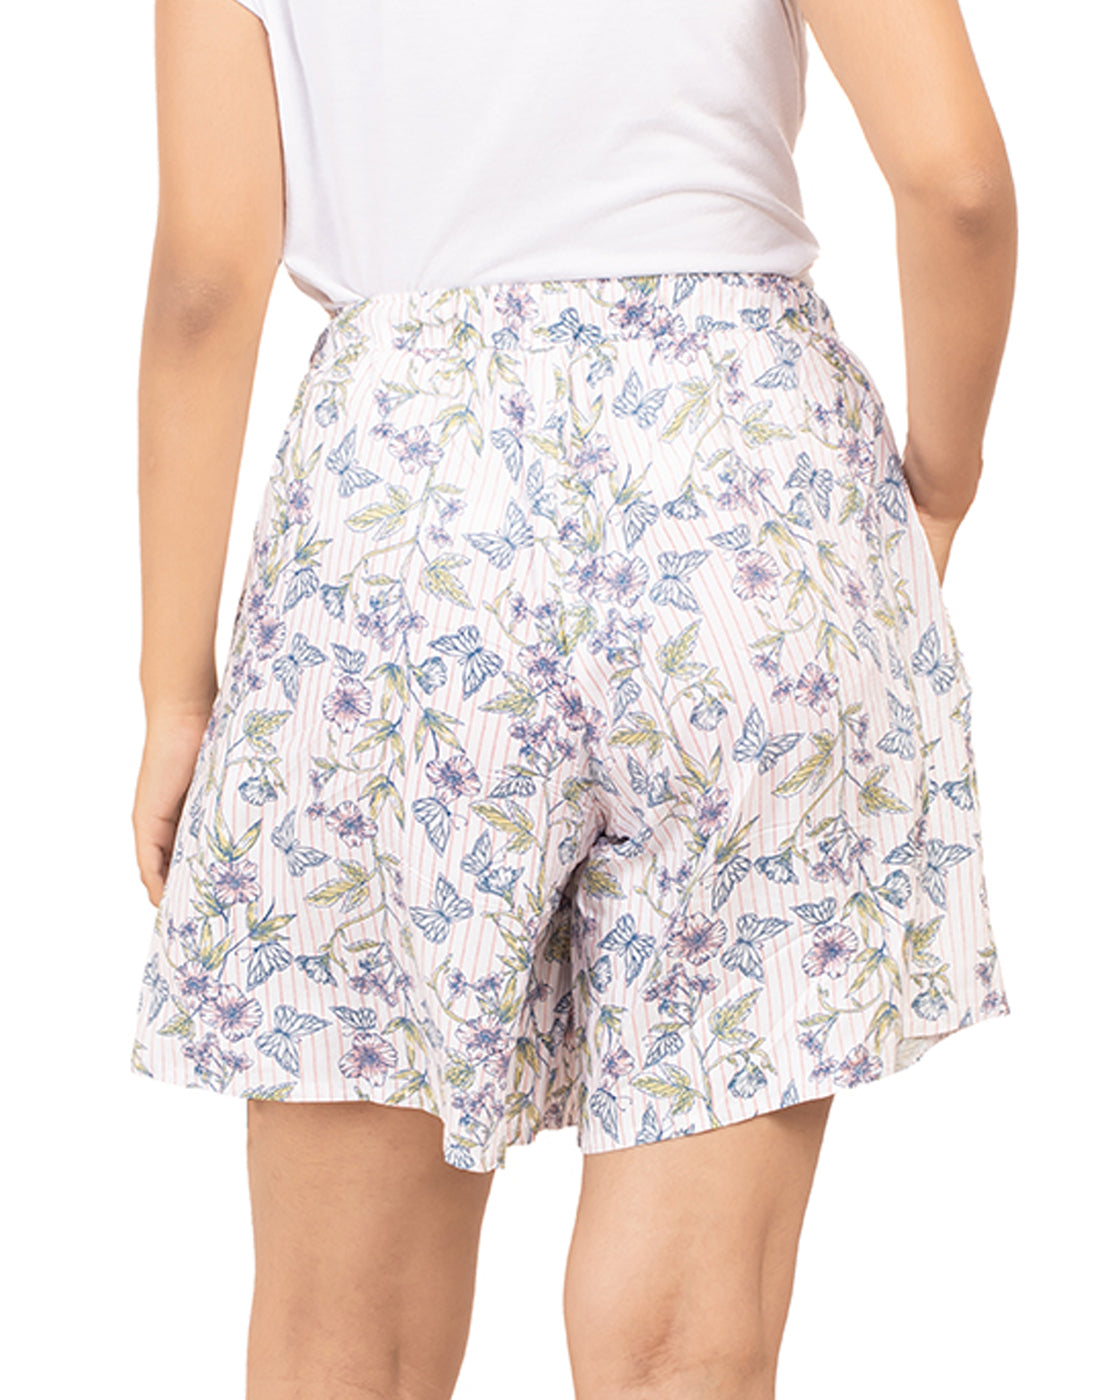 Culotte Shorts for Women-Butterflies